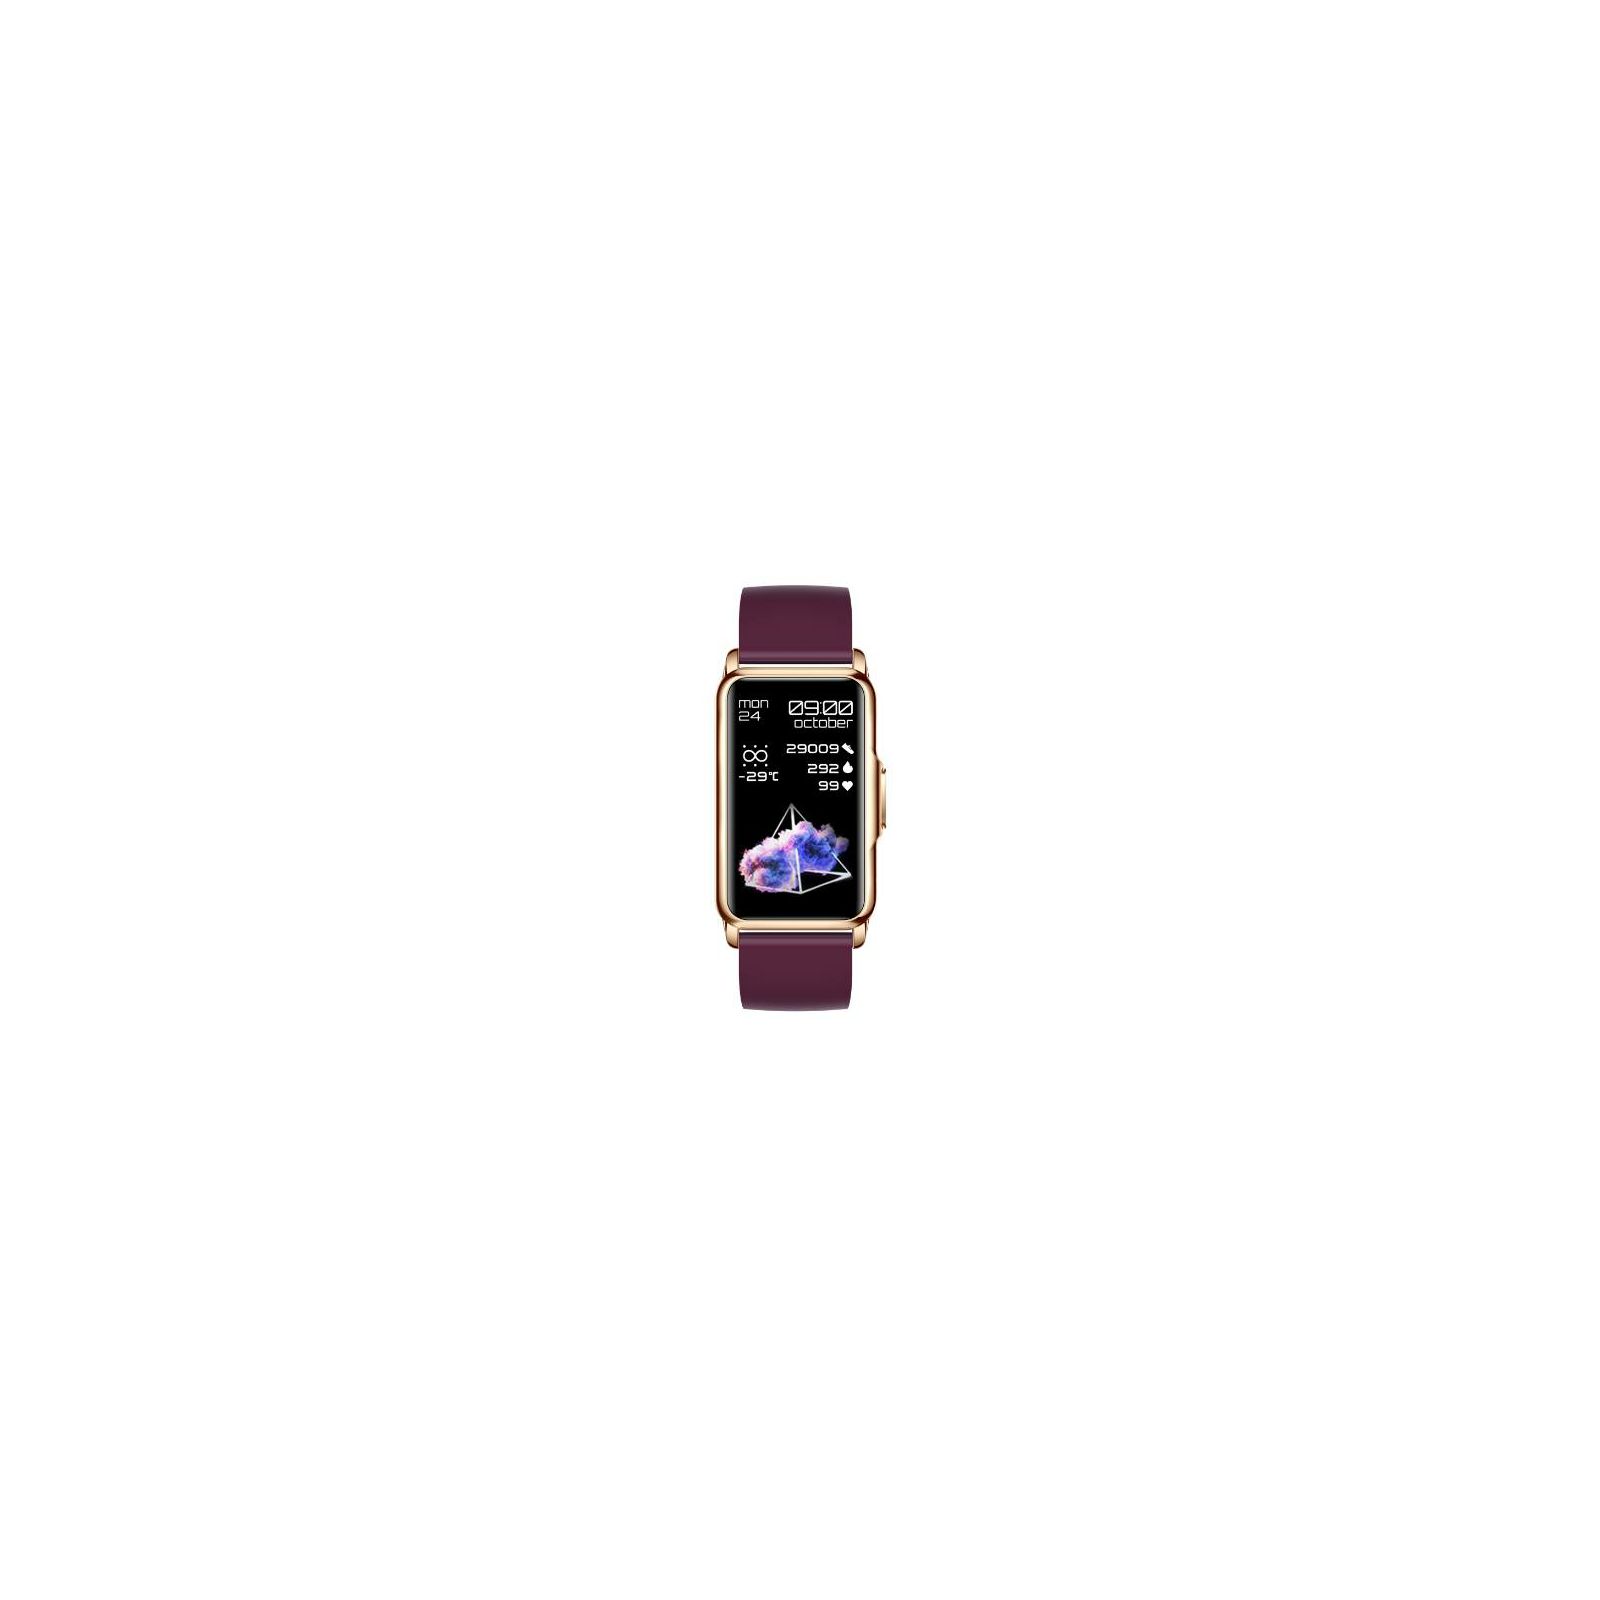 moye-kronos-fit-buddy-smart-band-purple-8605042605484_45246.jpg